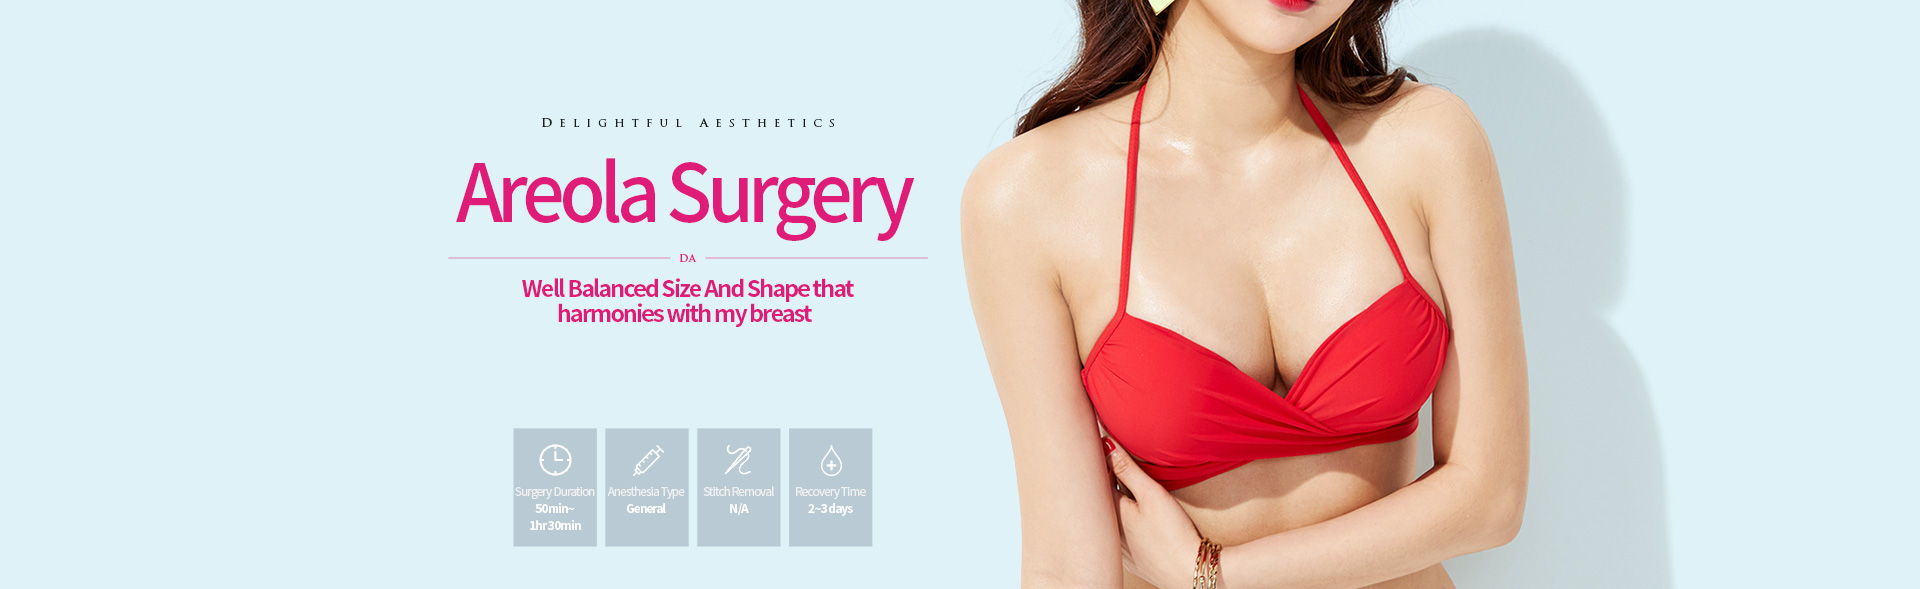 DA Nipple Surgery